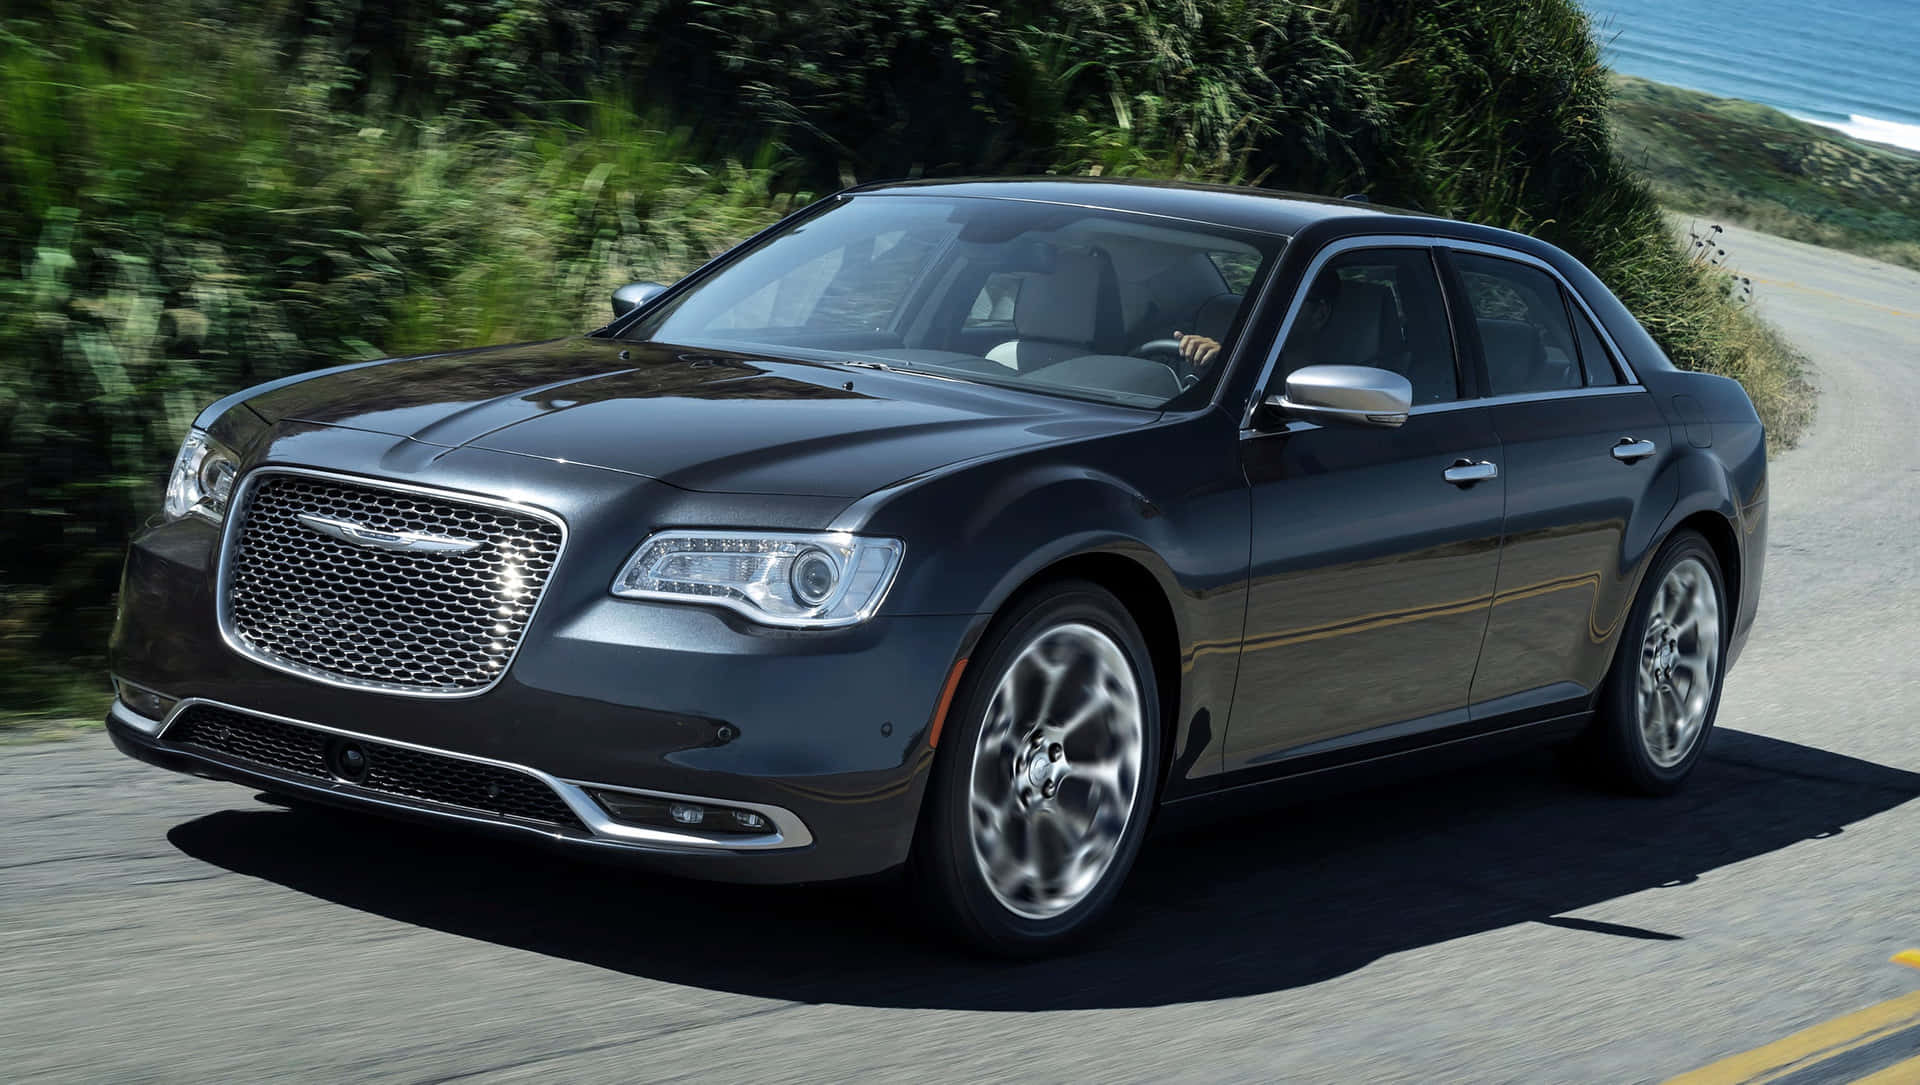 Chryslerpacifica: Kör Framtidens Stiliga Komfort Och Säkerhet.